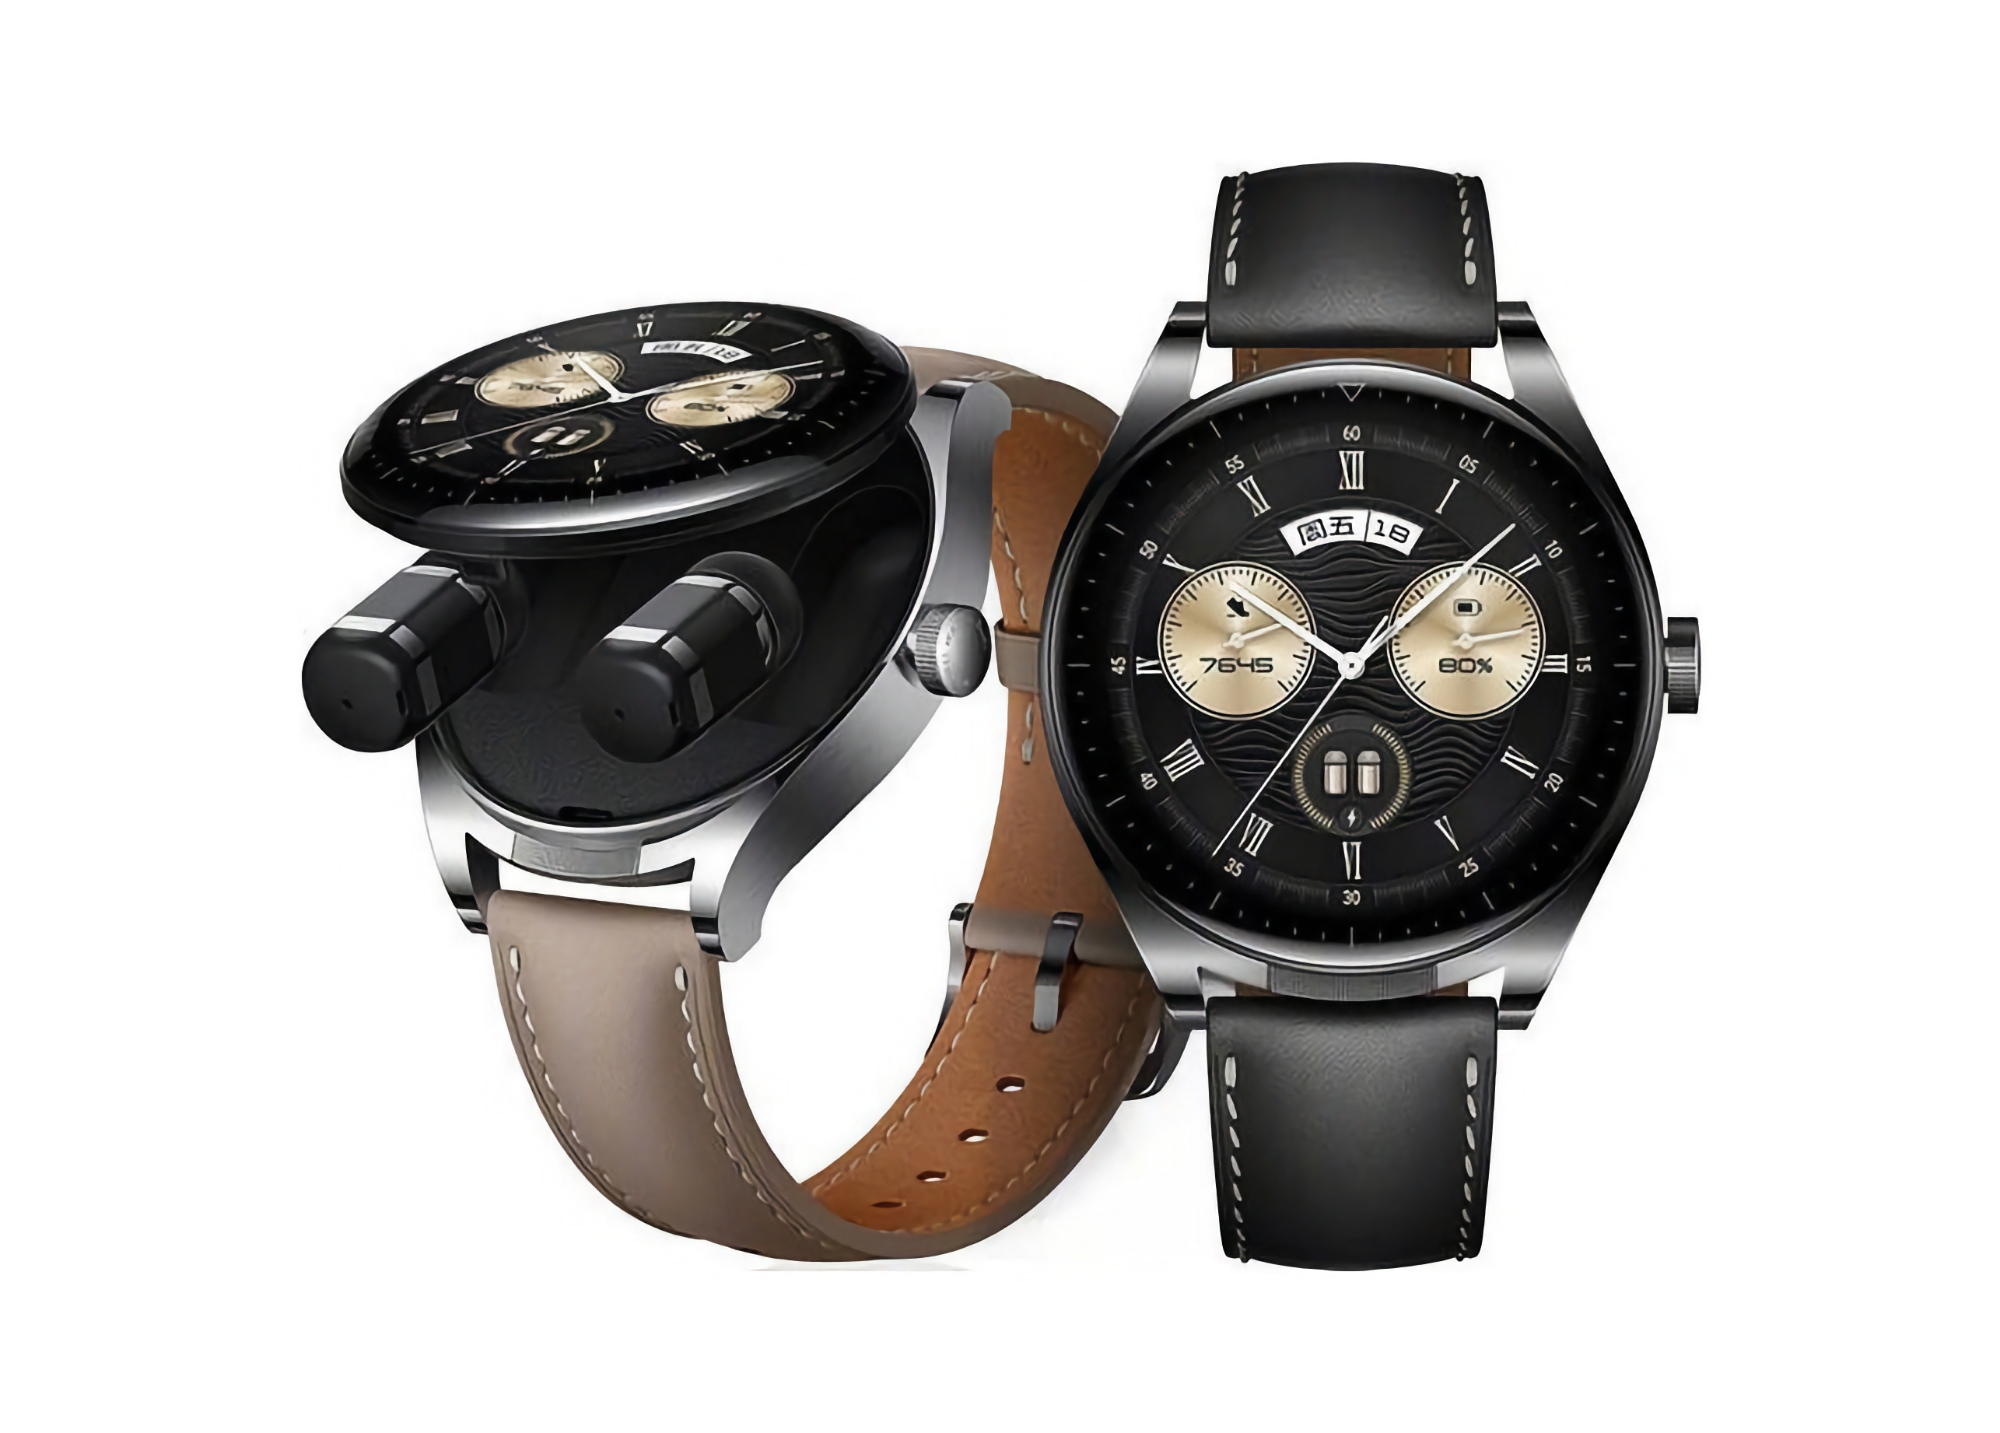 Huawei Watch Buds på den globala marknaden har börjat få HarmonyOS 4